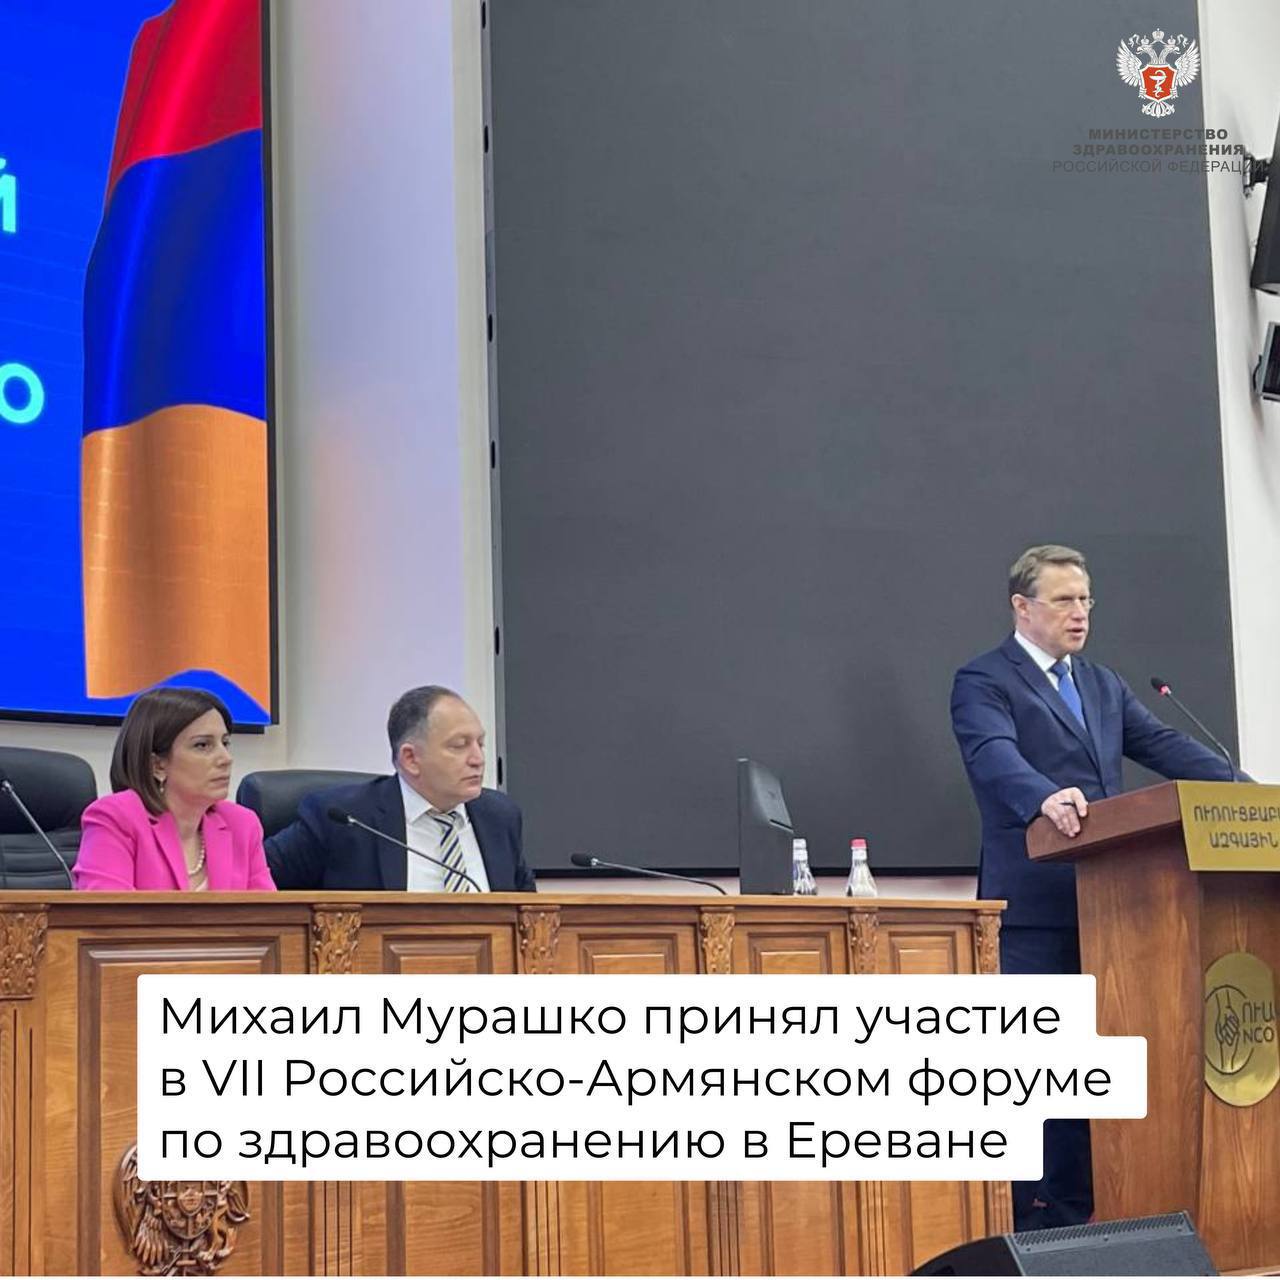  Михаил Мурашко принял участие в VII Российско-Армянском форуме по здравоохранению в Ереване